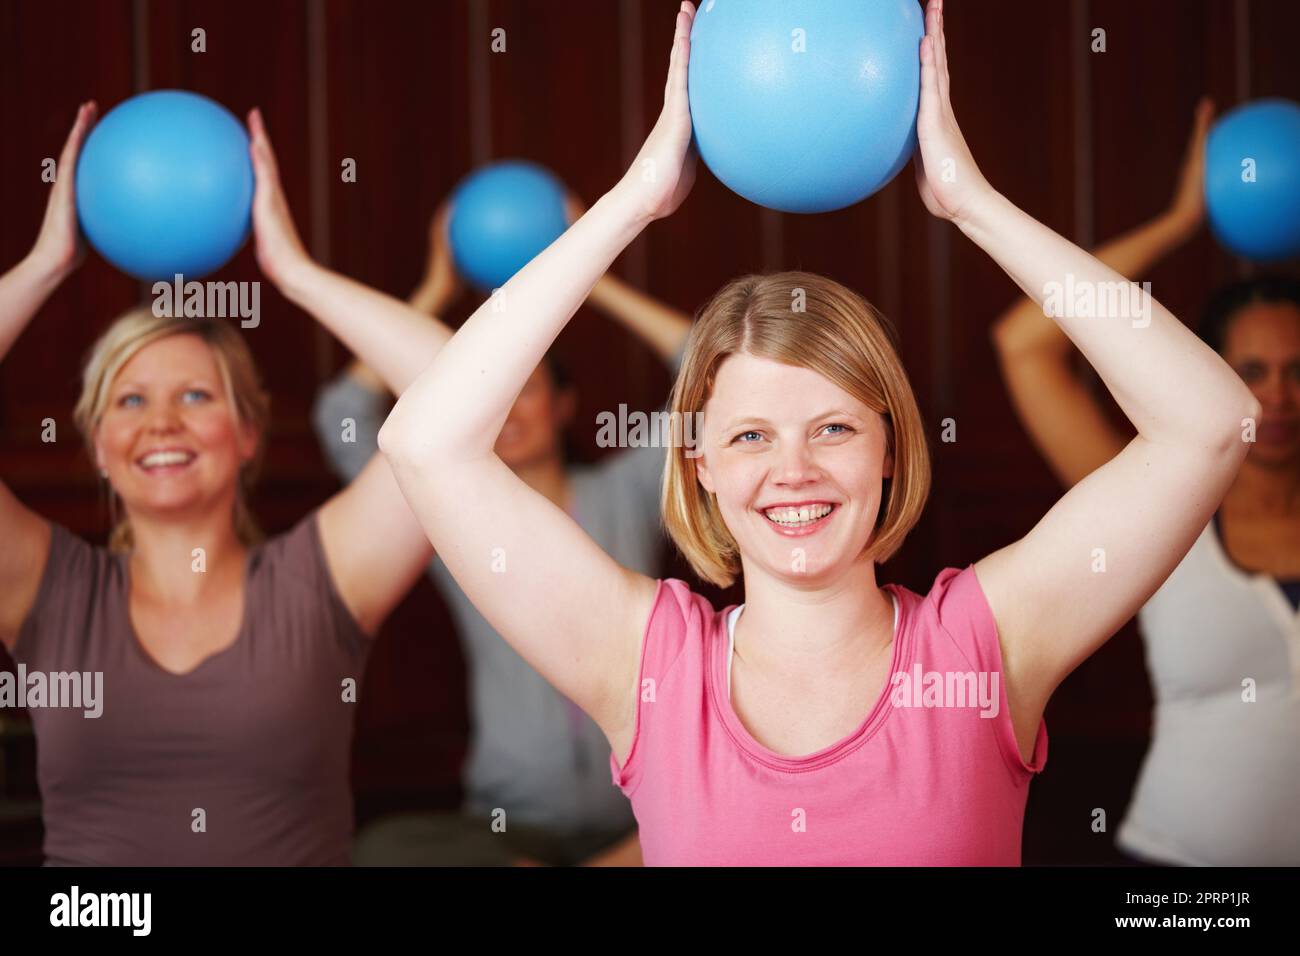 Pilates, fitness et entraînement d'une femme heureuse dans un cours de santé et de bien-être dans un studio de yoga. Entraînement de balle et exercice d'une femme de détente d'Allemagne avec un sourire essayant d'être en bonne santé dans une salle de gym Banque D'Images